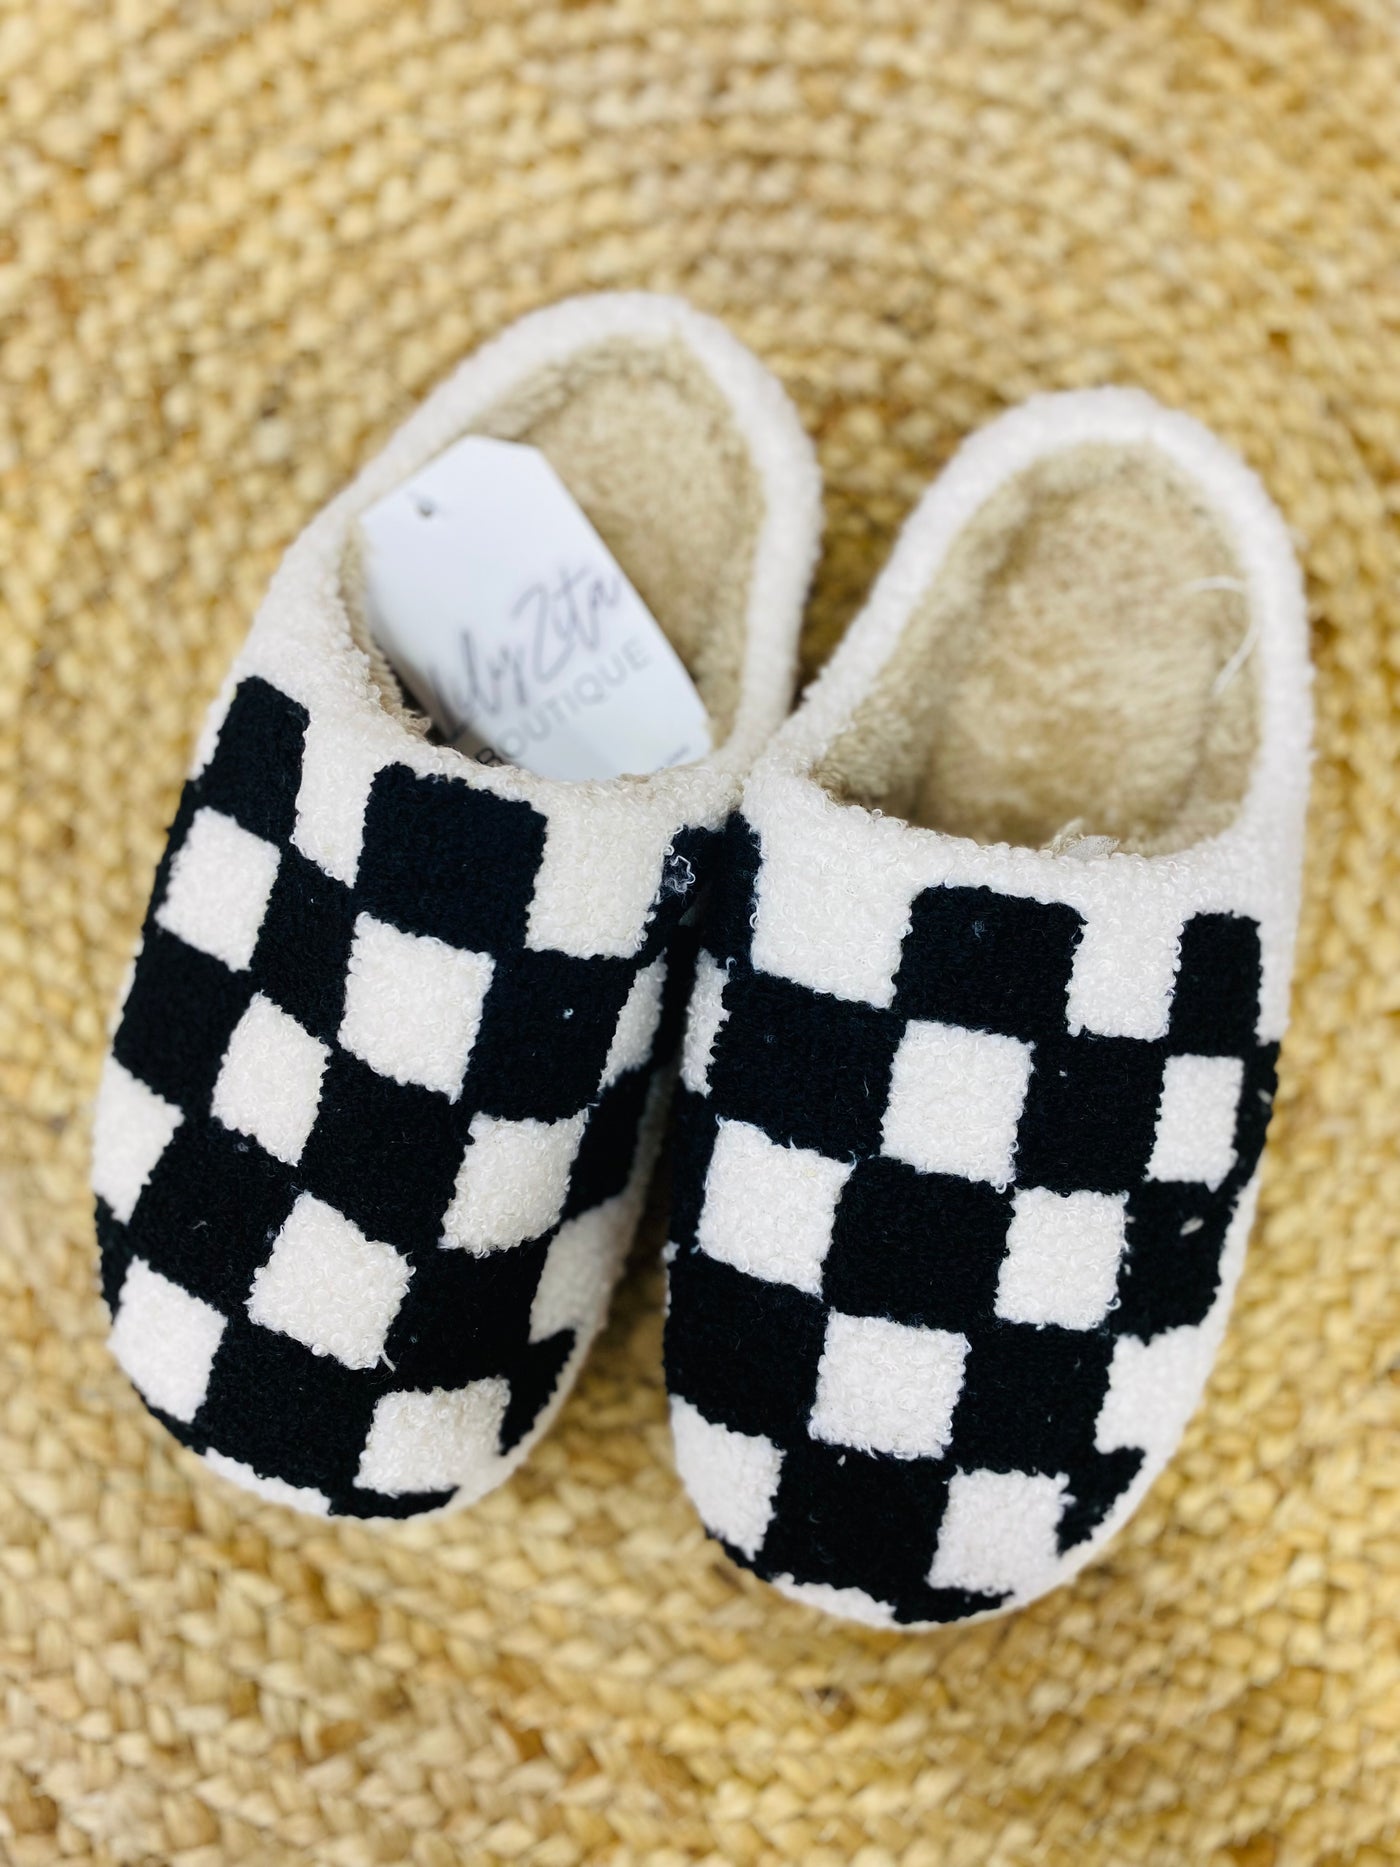 black and white checker slipper